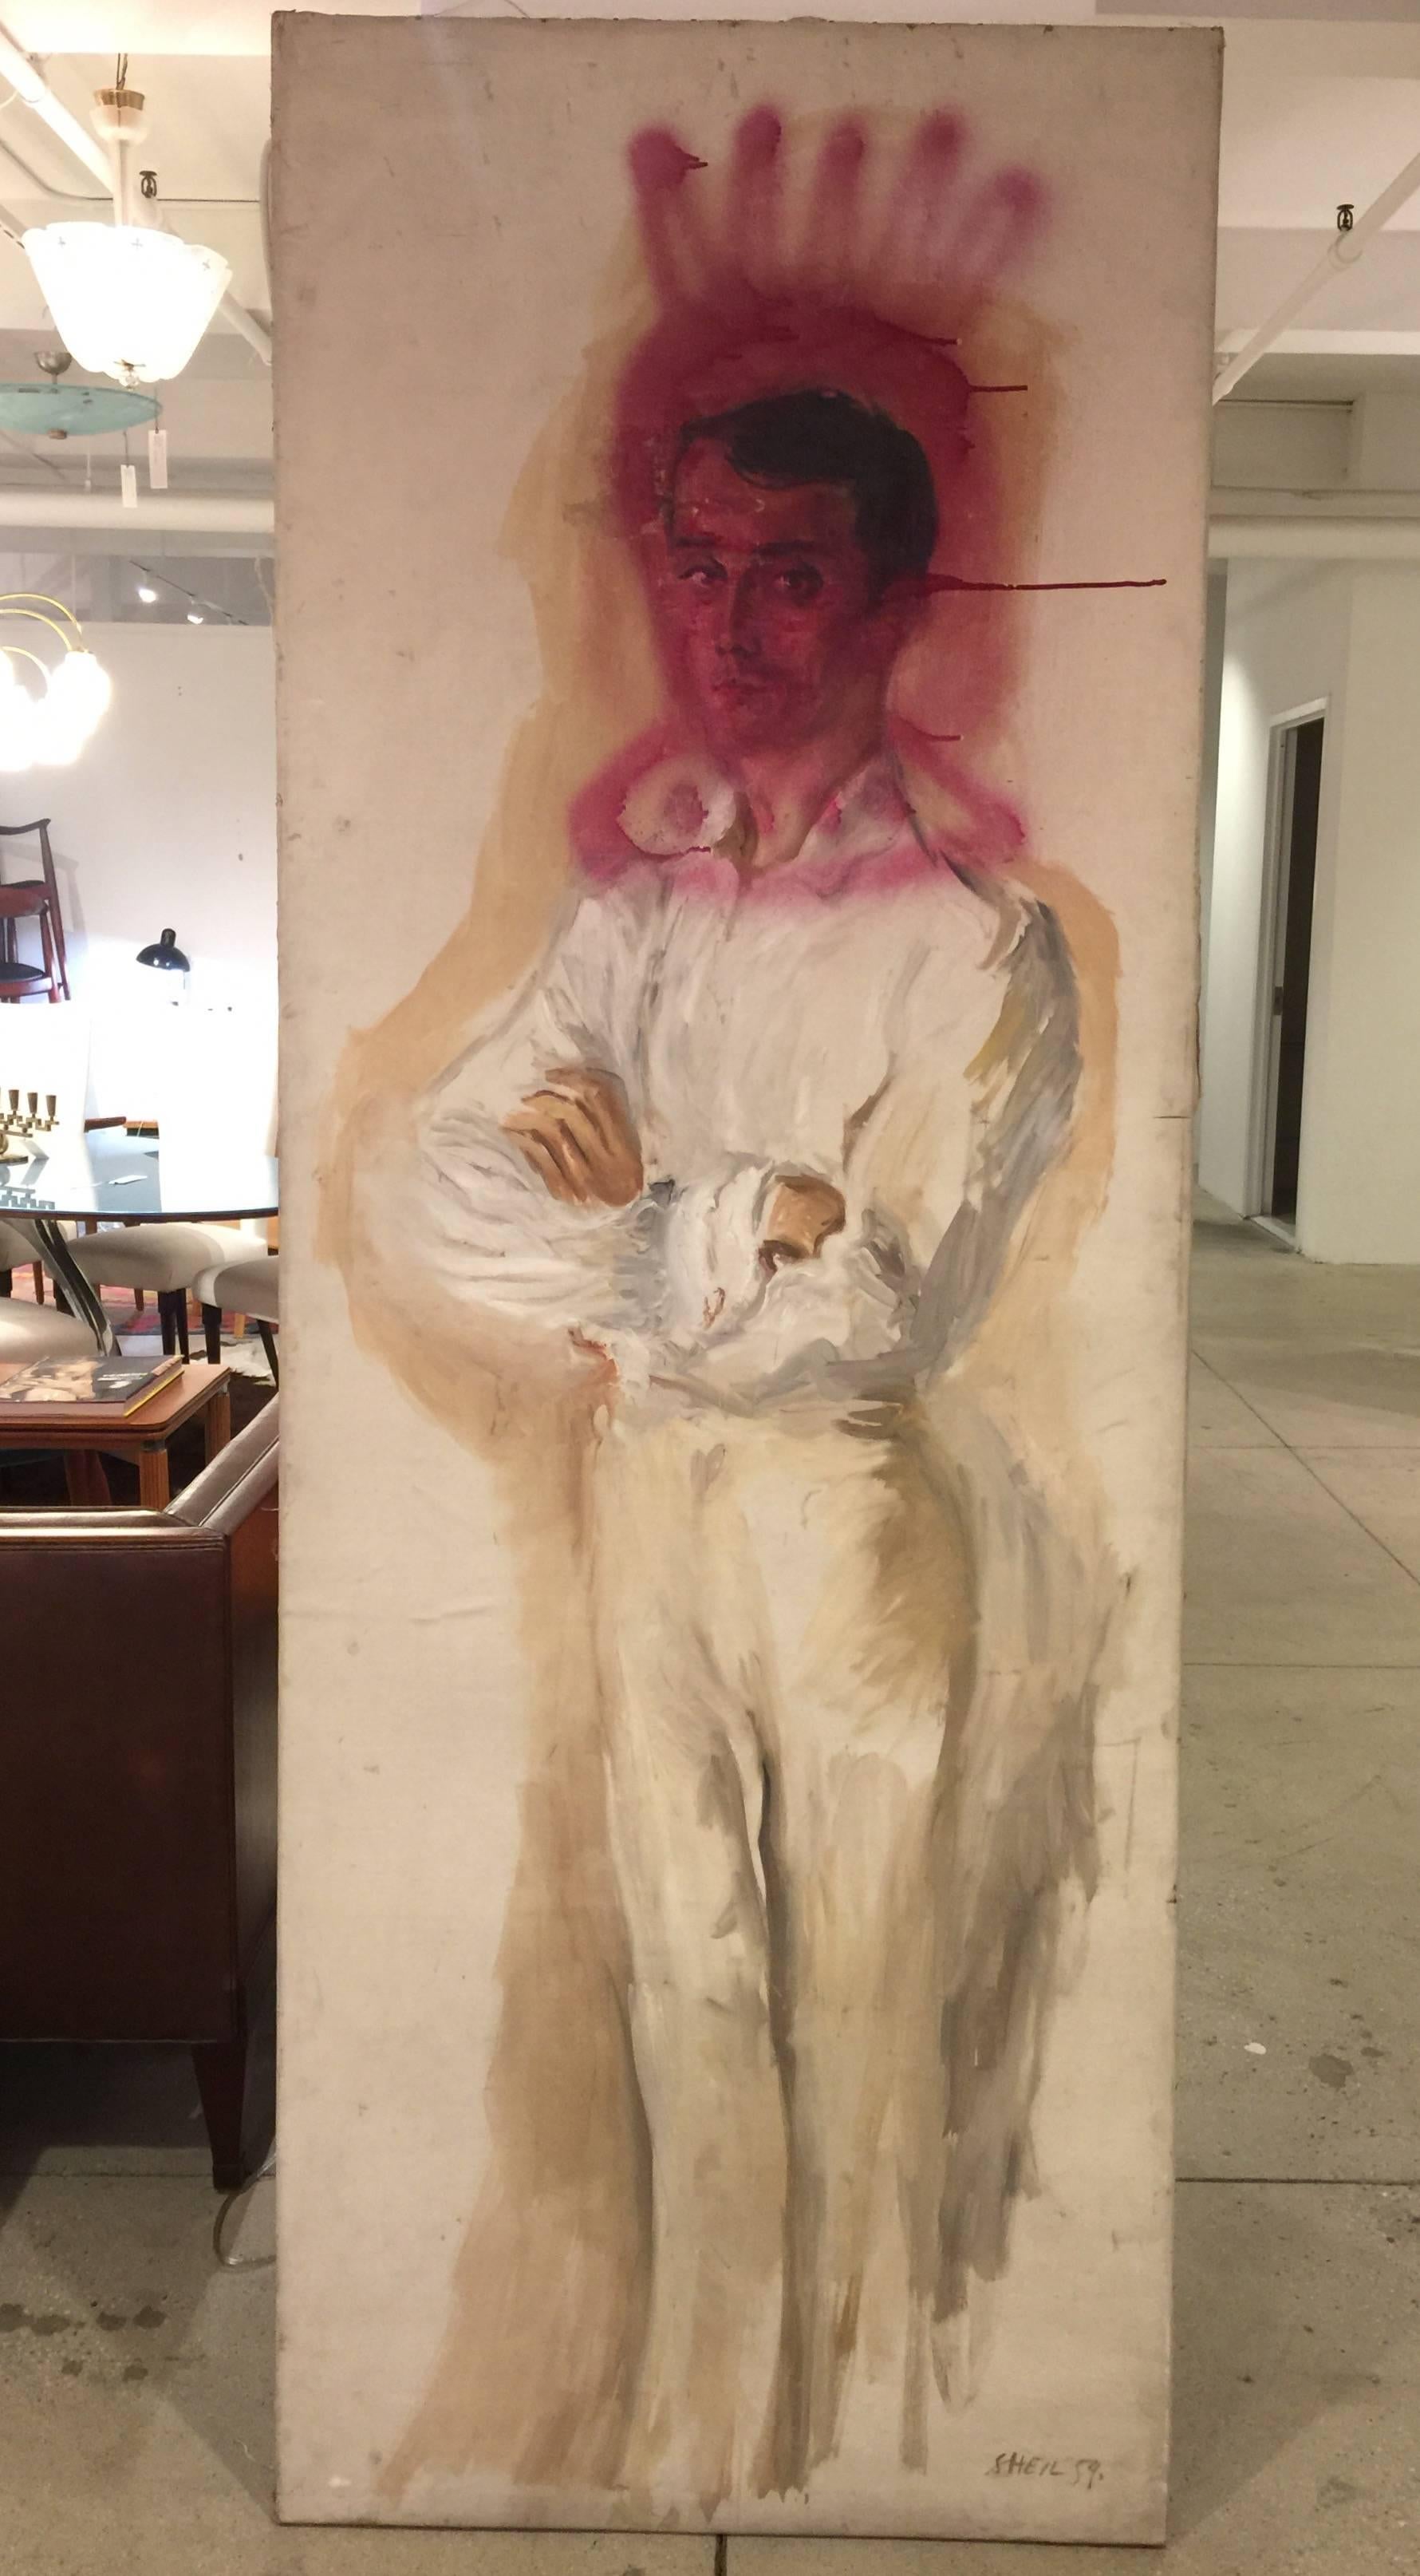 Une grande huile sur toile d'un homme par Peter Sheil. 
Ce tableau a été peint en 1958.
Peter Sheil a peint un portrait de Tallulah Bankhead en 1962, qui fait partie de la collection du Victoria and Albert Museum.
Une autre œuvre a été réalisée